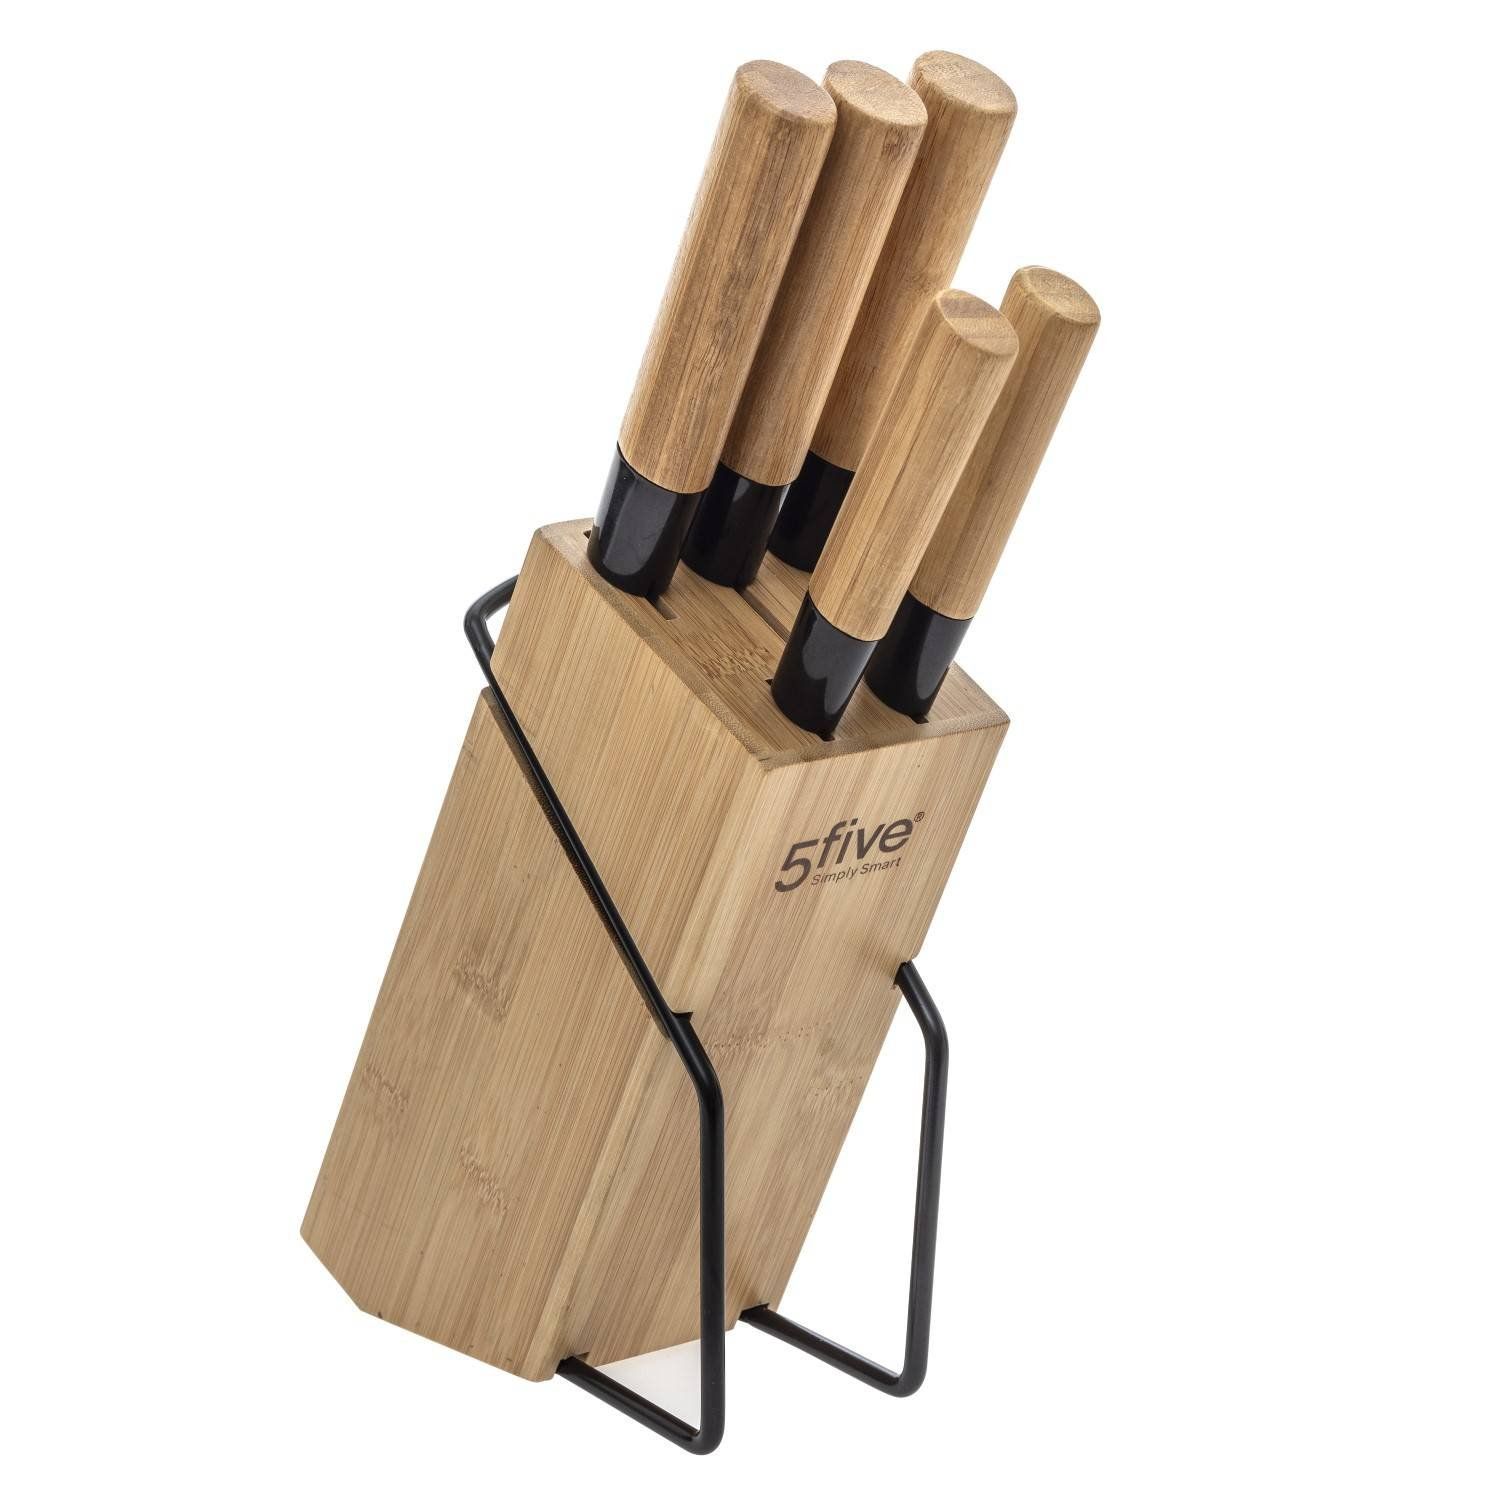 5five Simply Smart Sada 5ti kuchyňských nožů na bambusovém stojanu - EMAKO.CZ s.r.o.